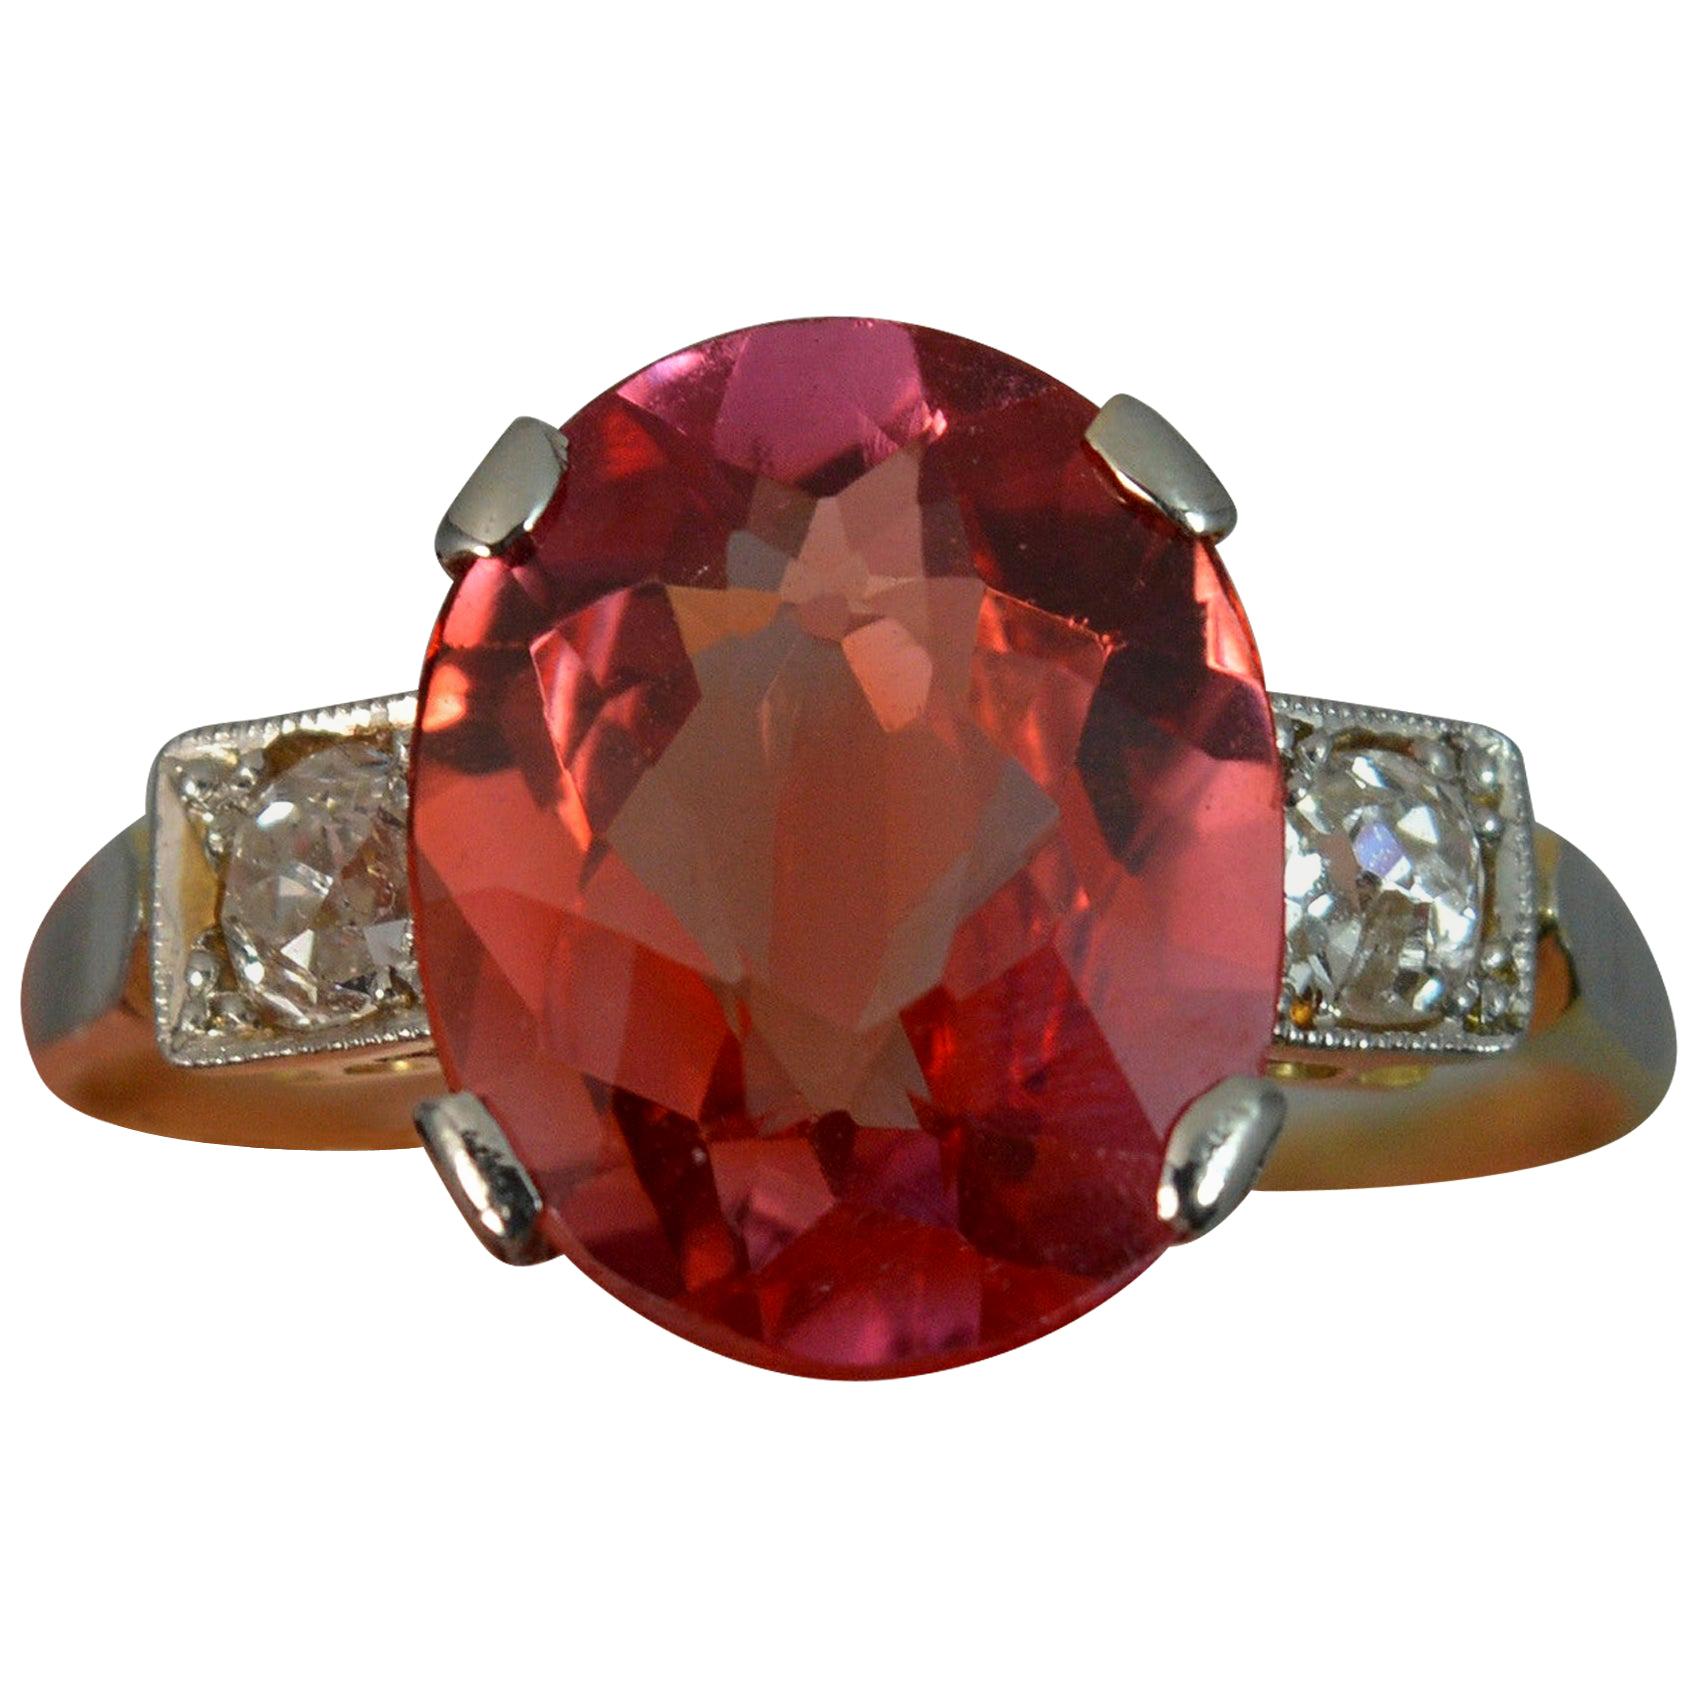 Striking Antique Orange Red Stone Old Cut Diamond 18 Carat Gold Trilogy Ring